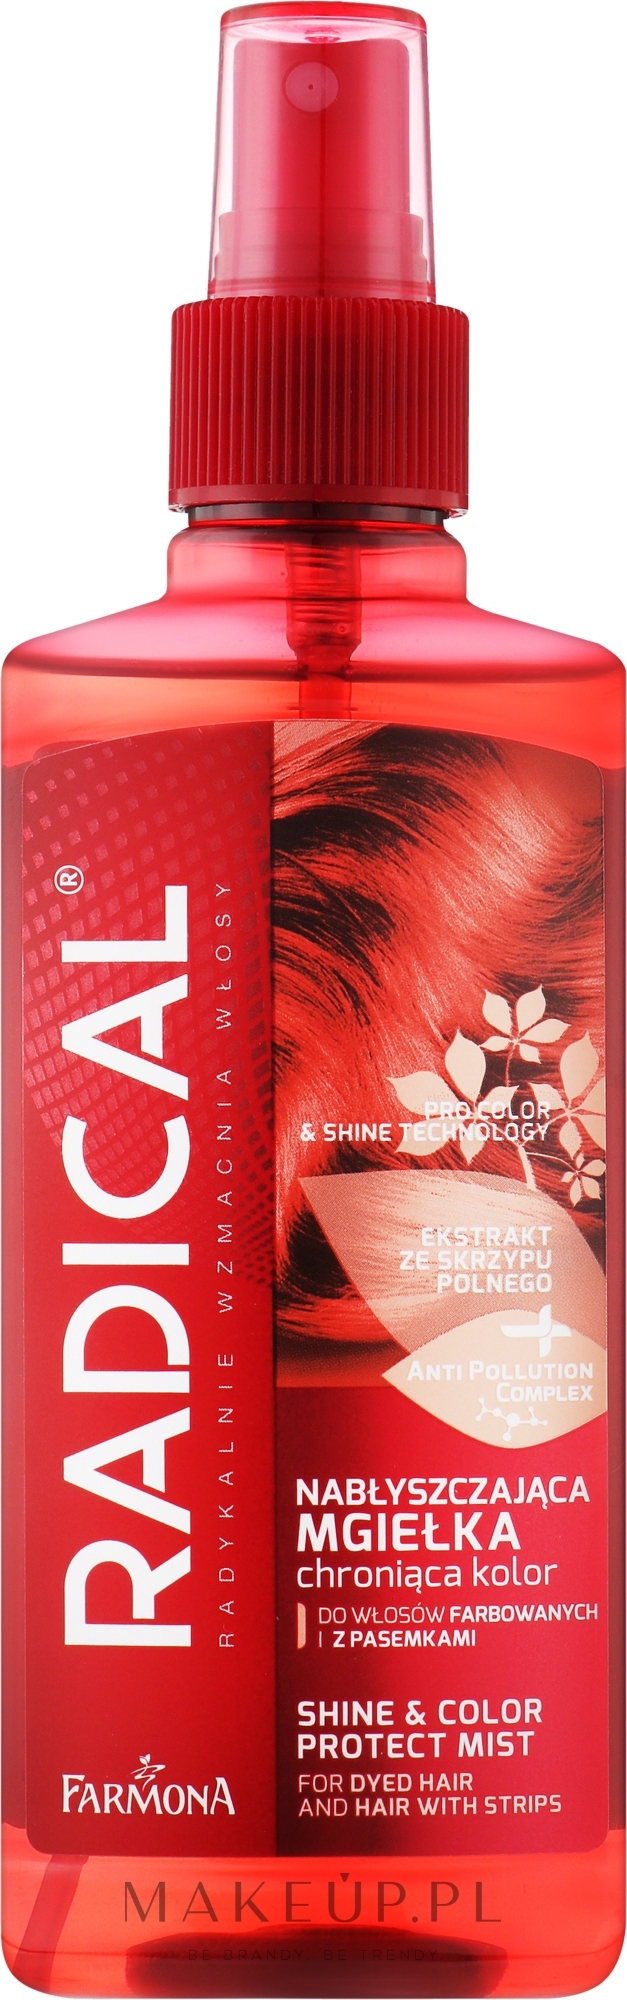 Mgiełka nabłyszczająca i chroniąca kolor do włosów farbowanych - Farmona Radical Pro Color & Shine Technology Mist — Zdjęcie 200 ml